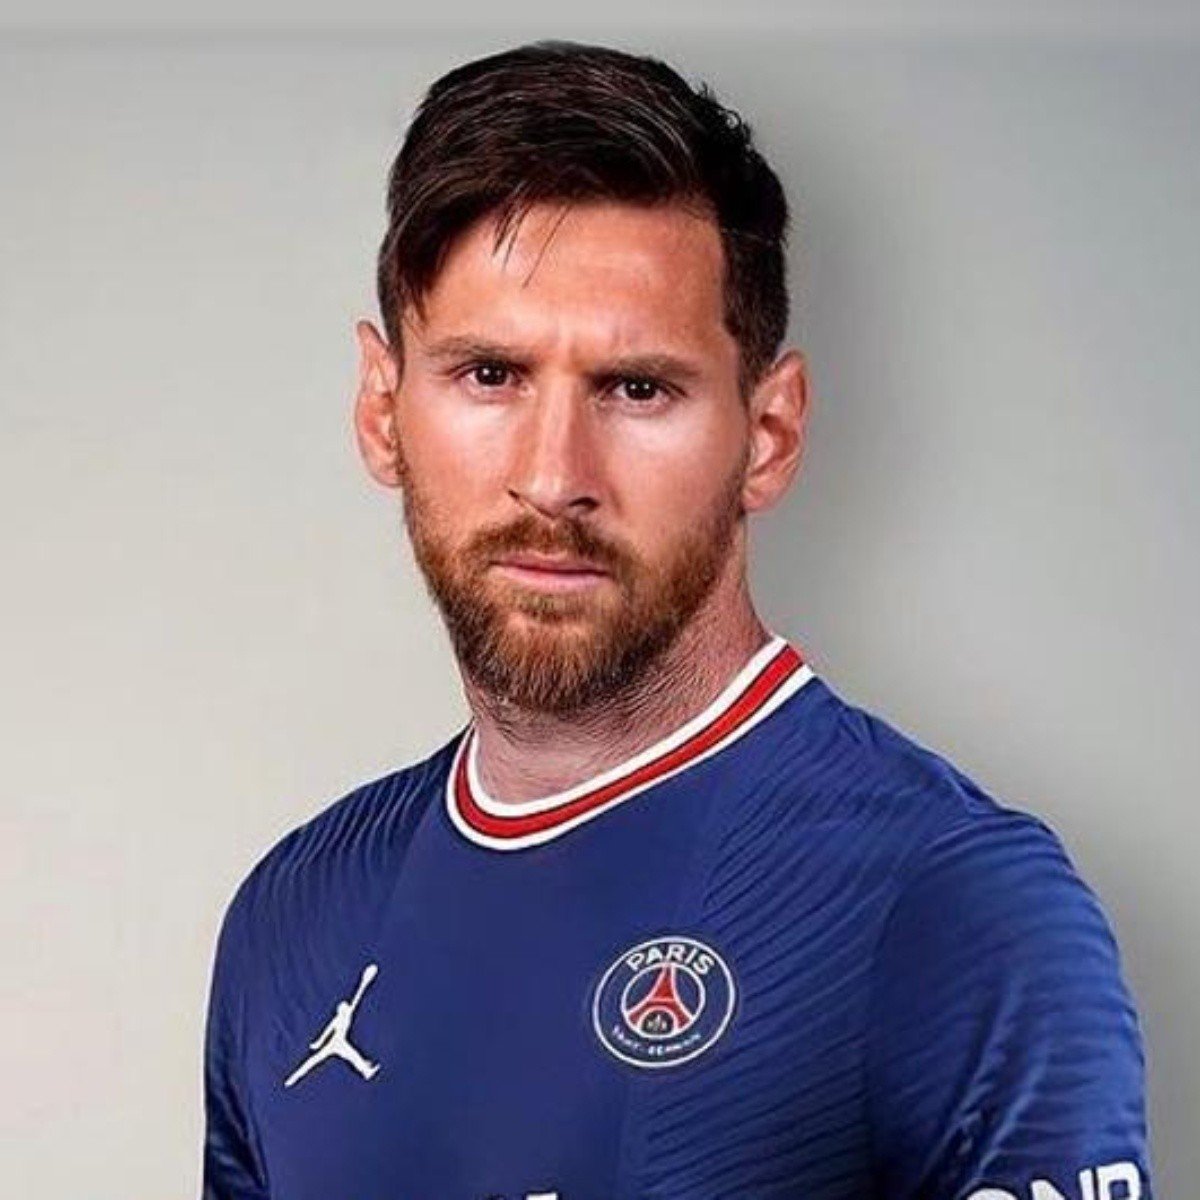 Messi Paris Saint Germain Wallpaper